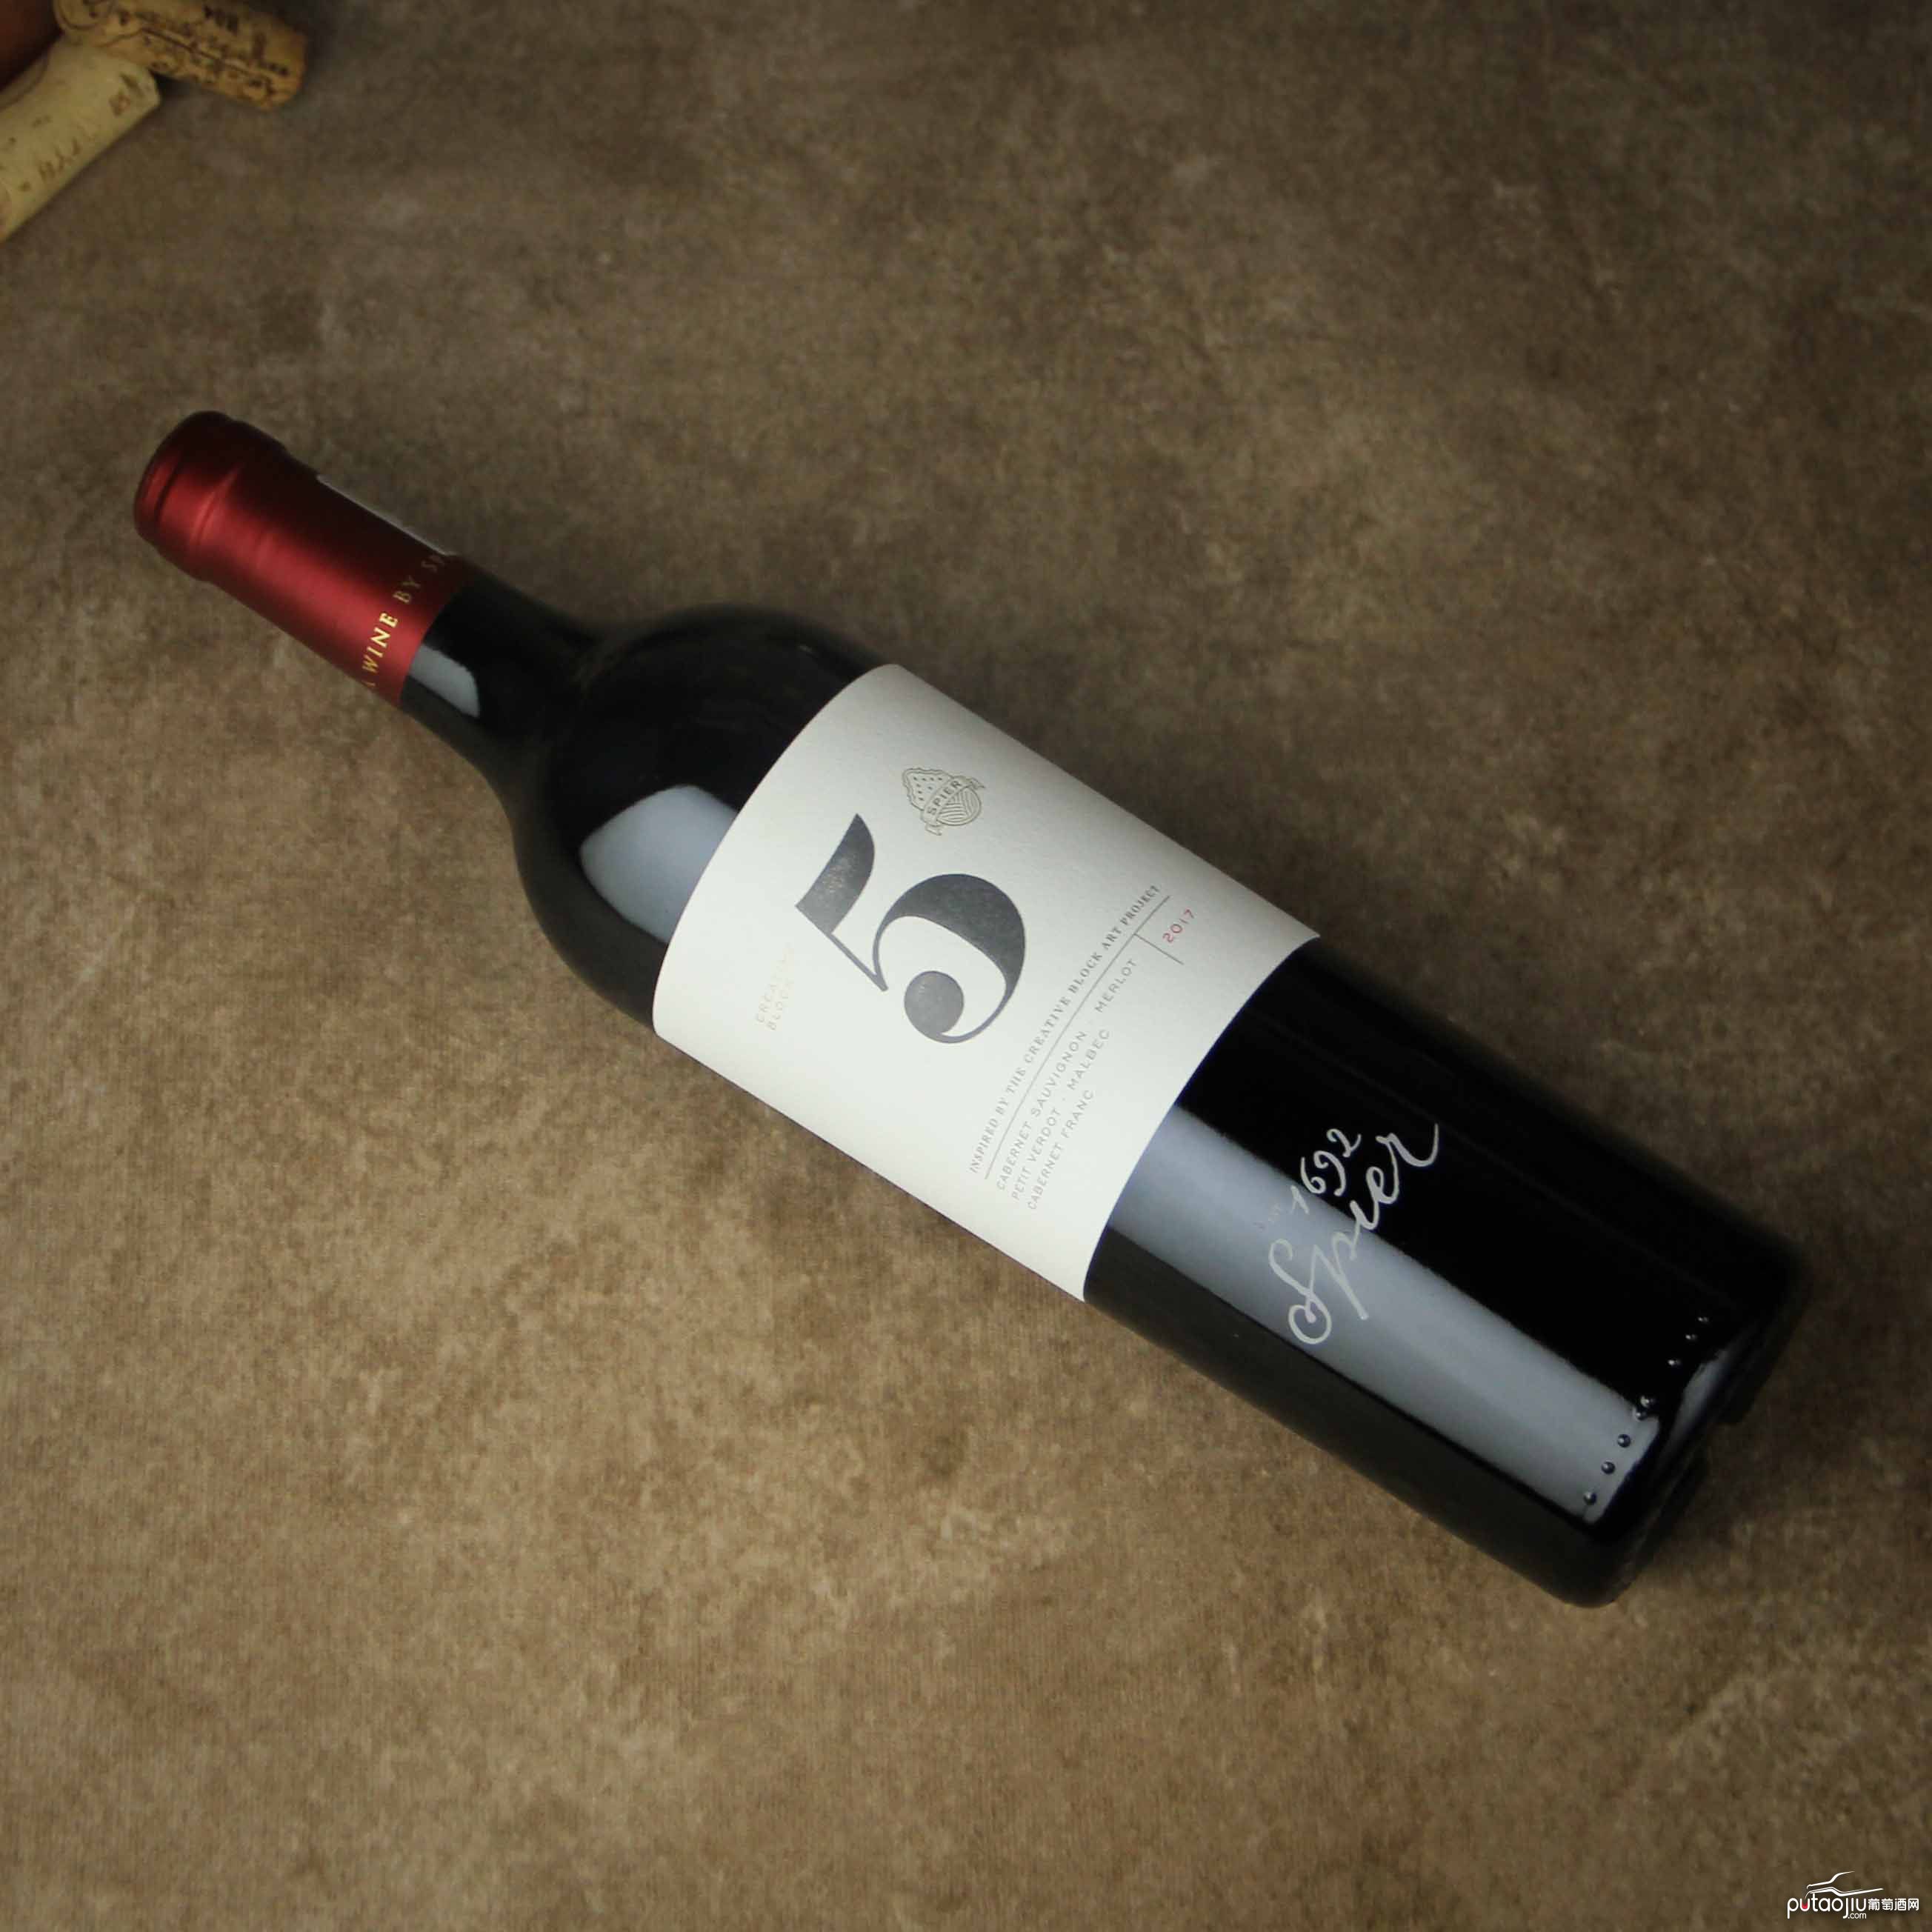 南非斯泰伦布什斯皮尔创意区间5号混酿红葡萄酒